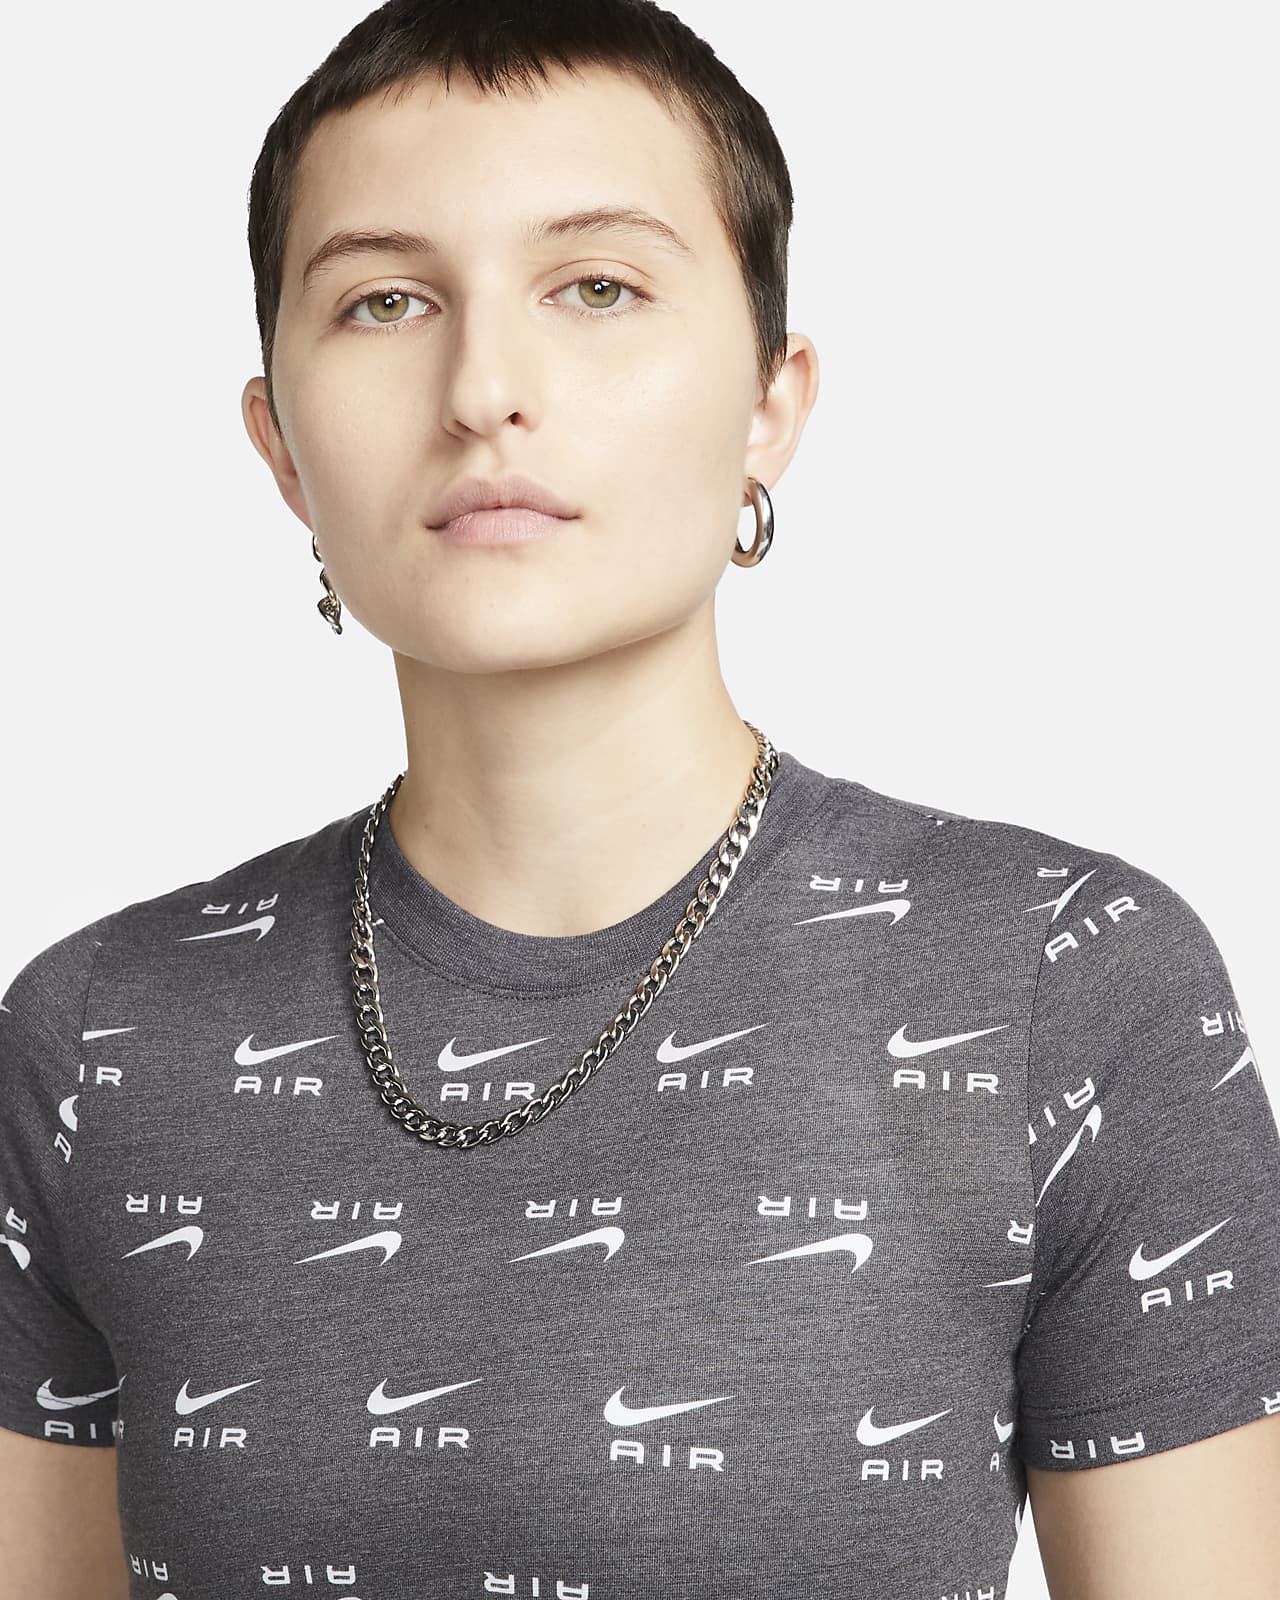 Tulipaner Bermad forskellige Nike Air Women's Slim-Fit Printed Crop T-Shirt. Nike JP